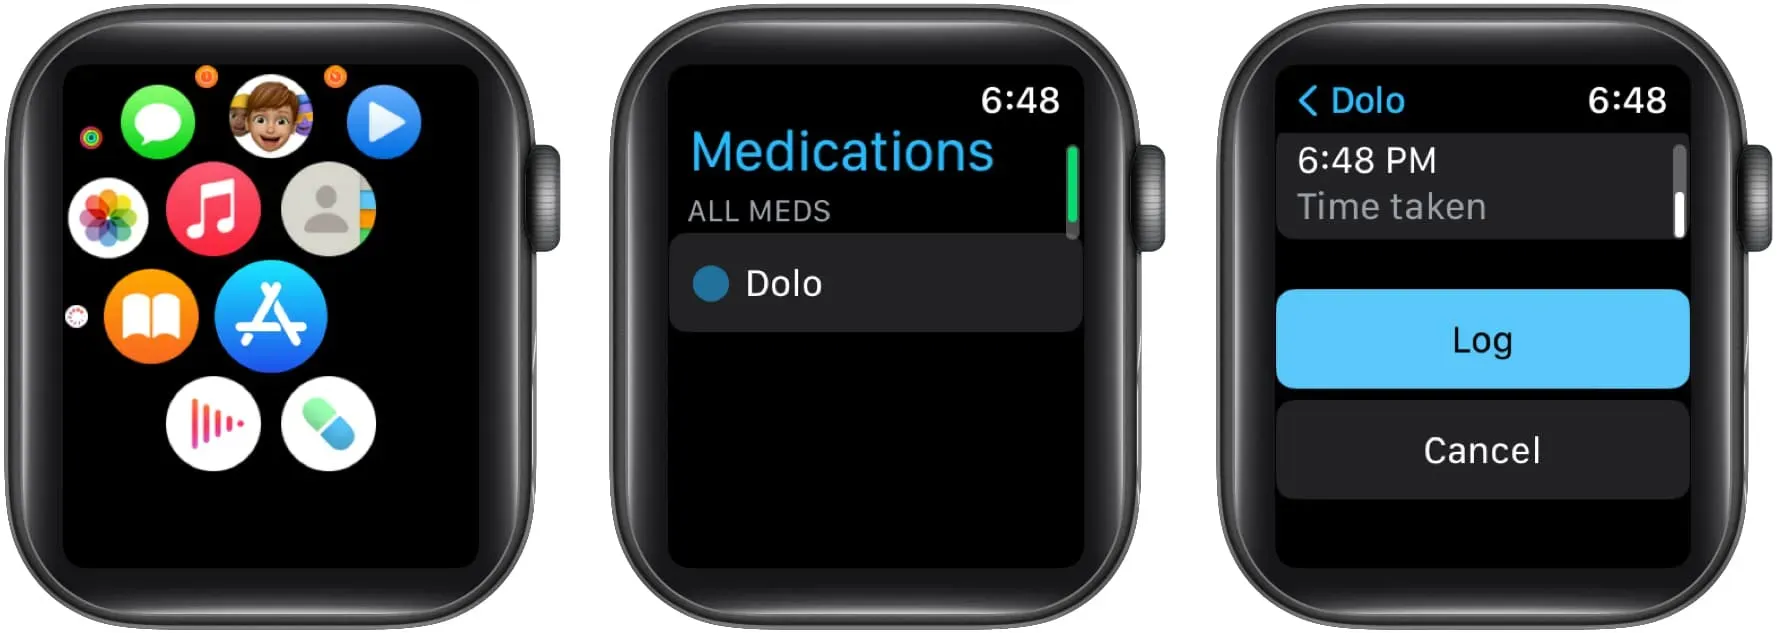 Registra i farmaci su Apple Watch